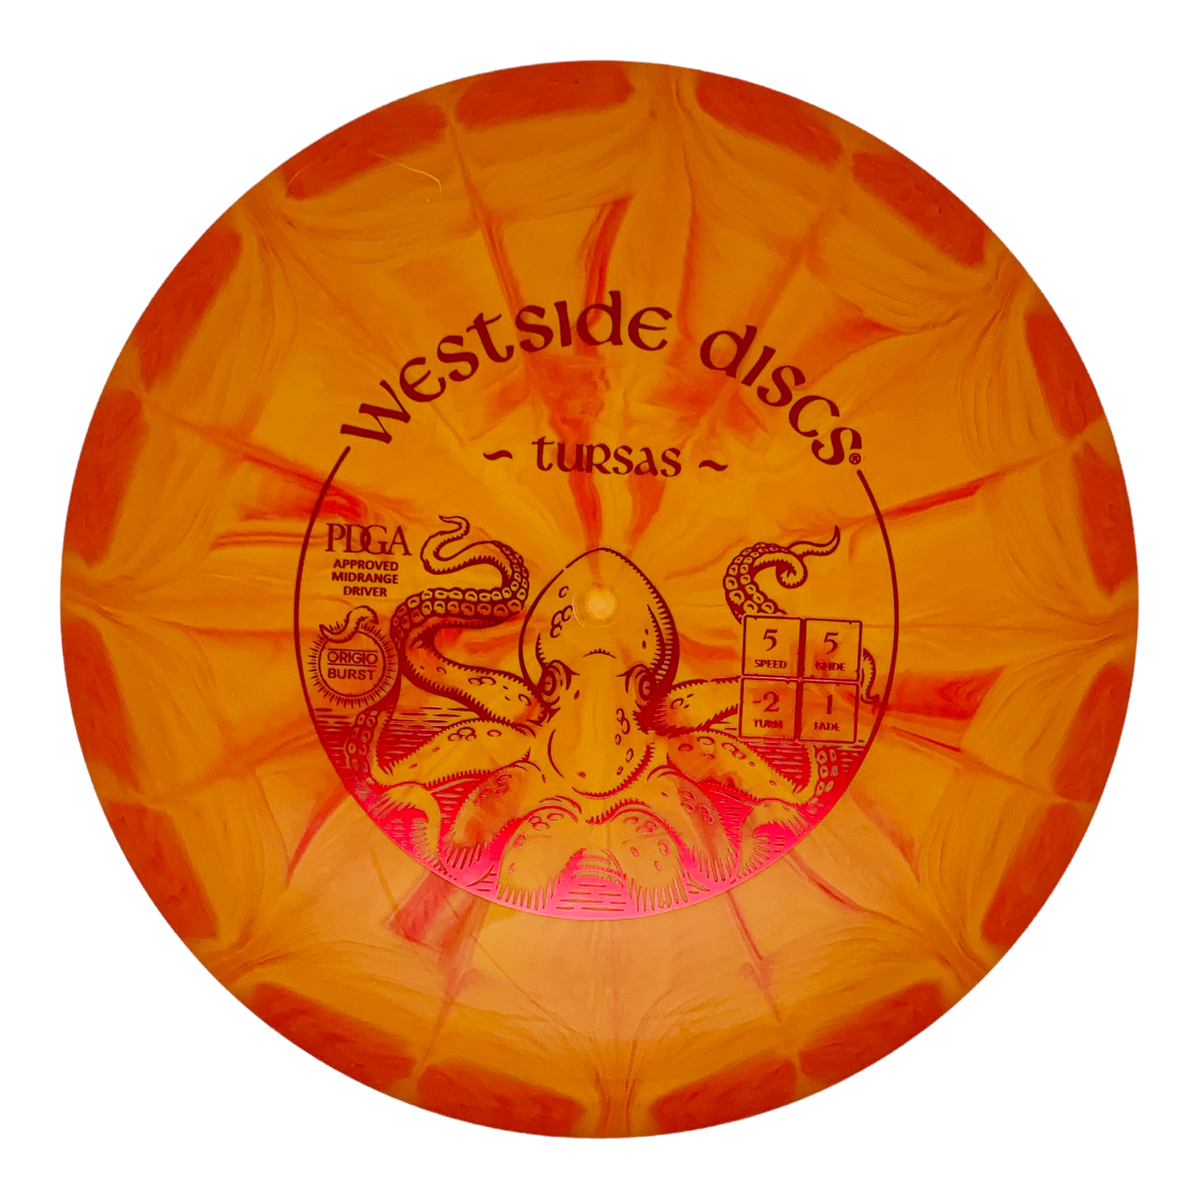 Westside Discs Origio Tursas